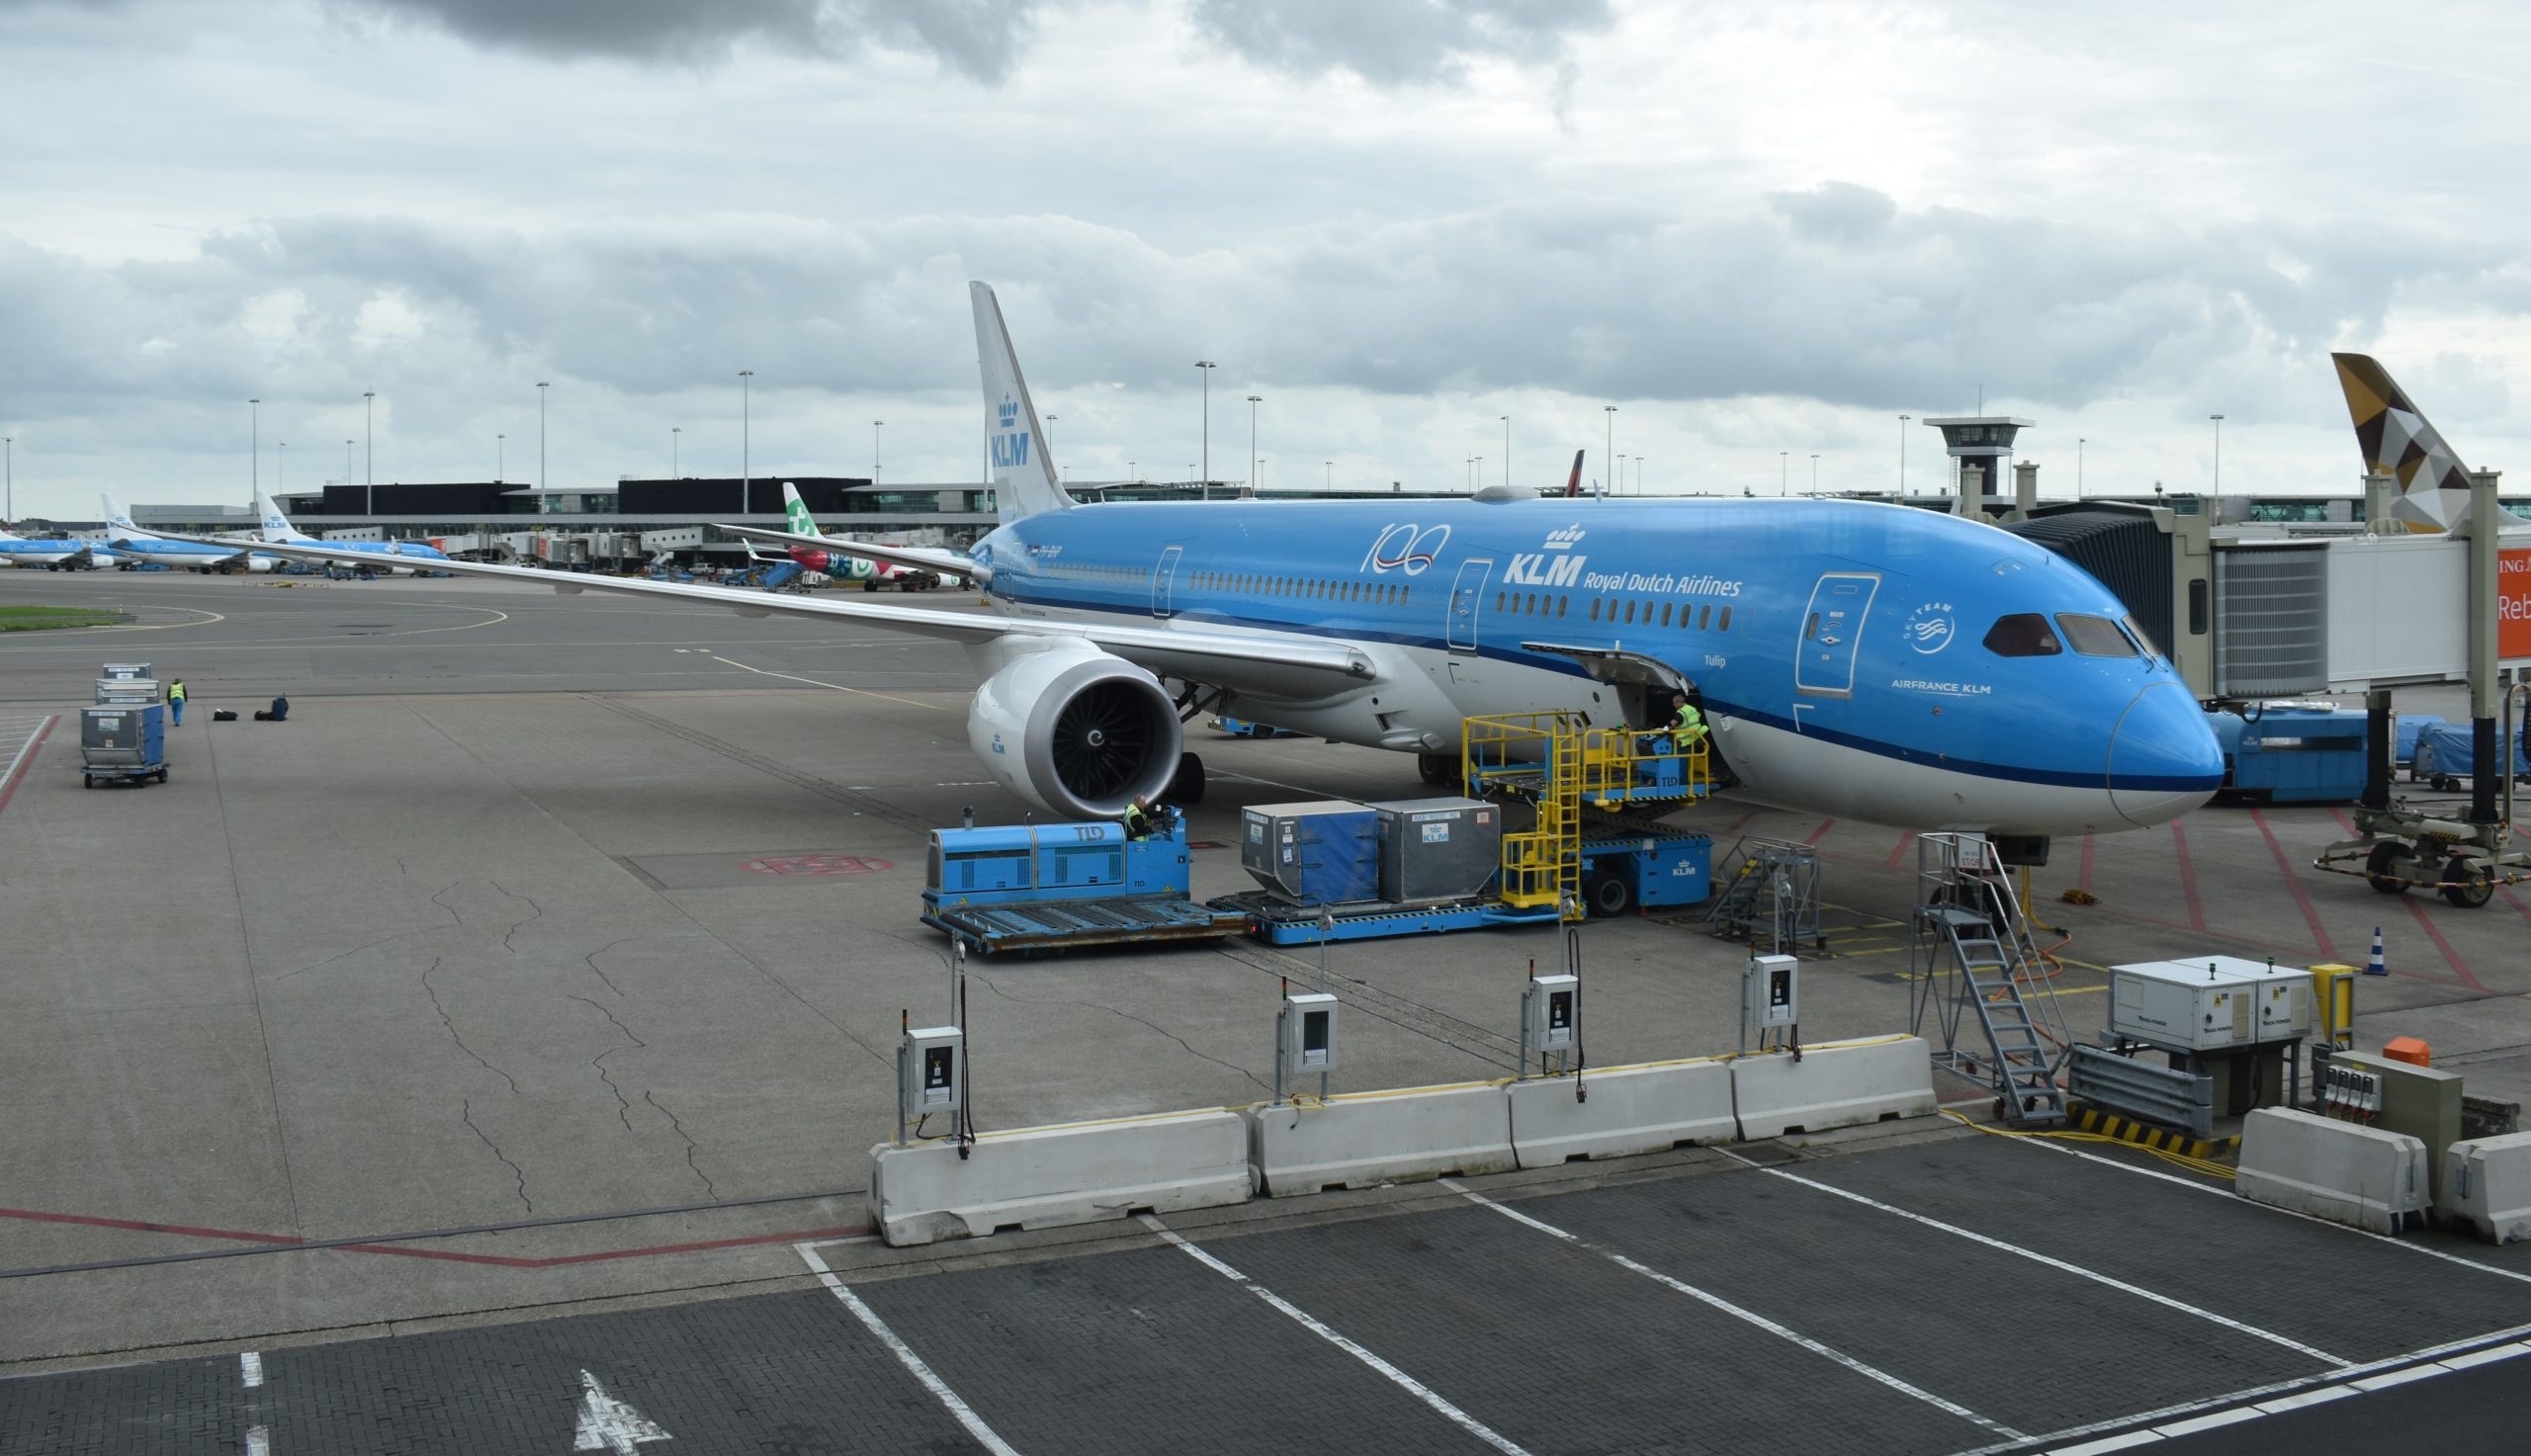 Filing A KLM EU261 Claim